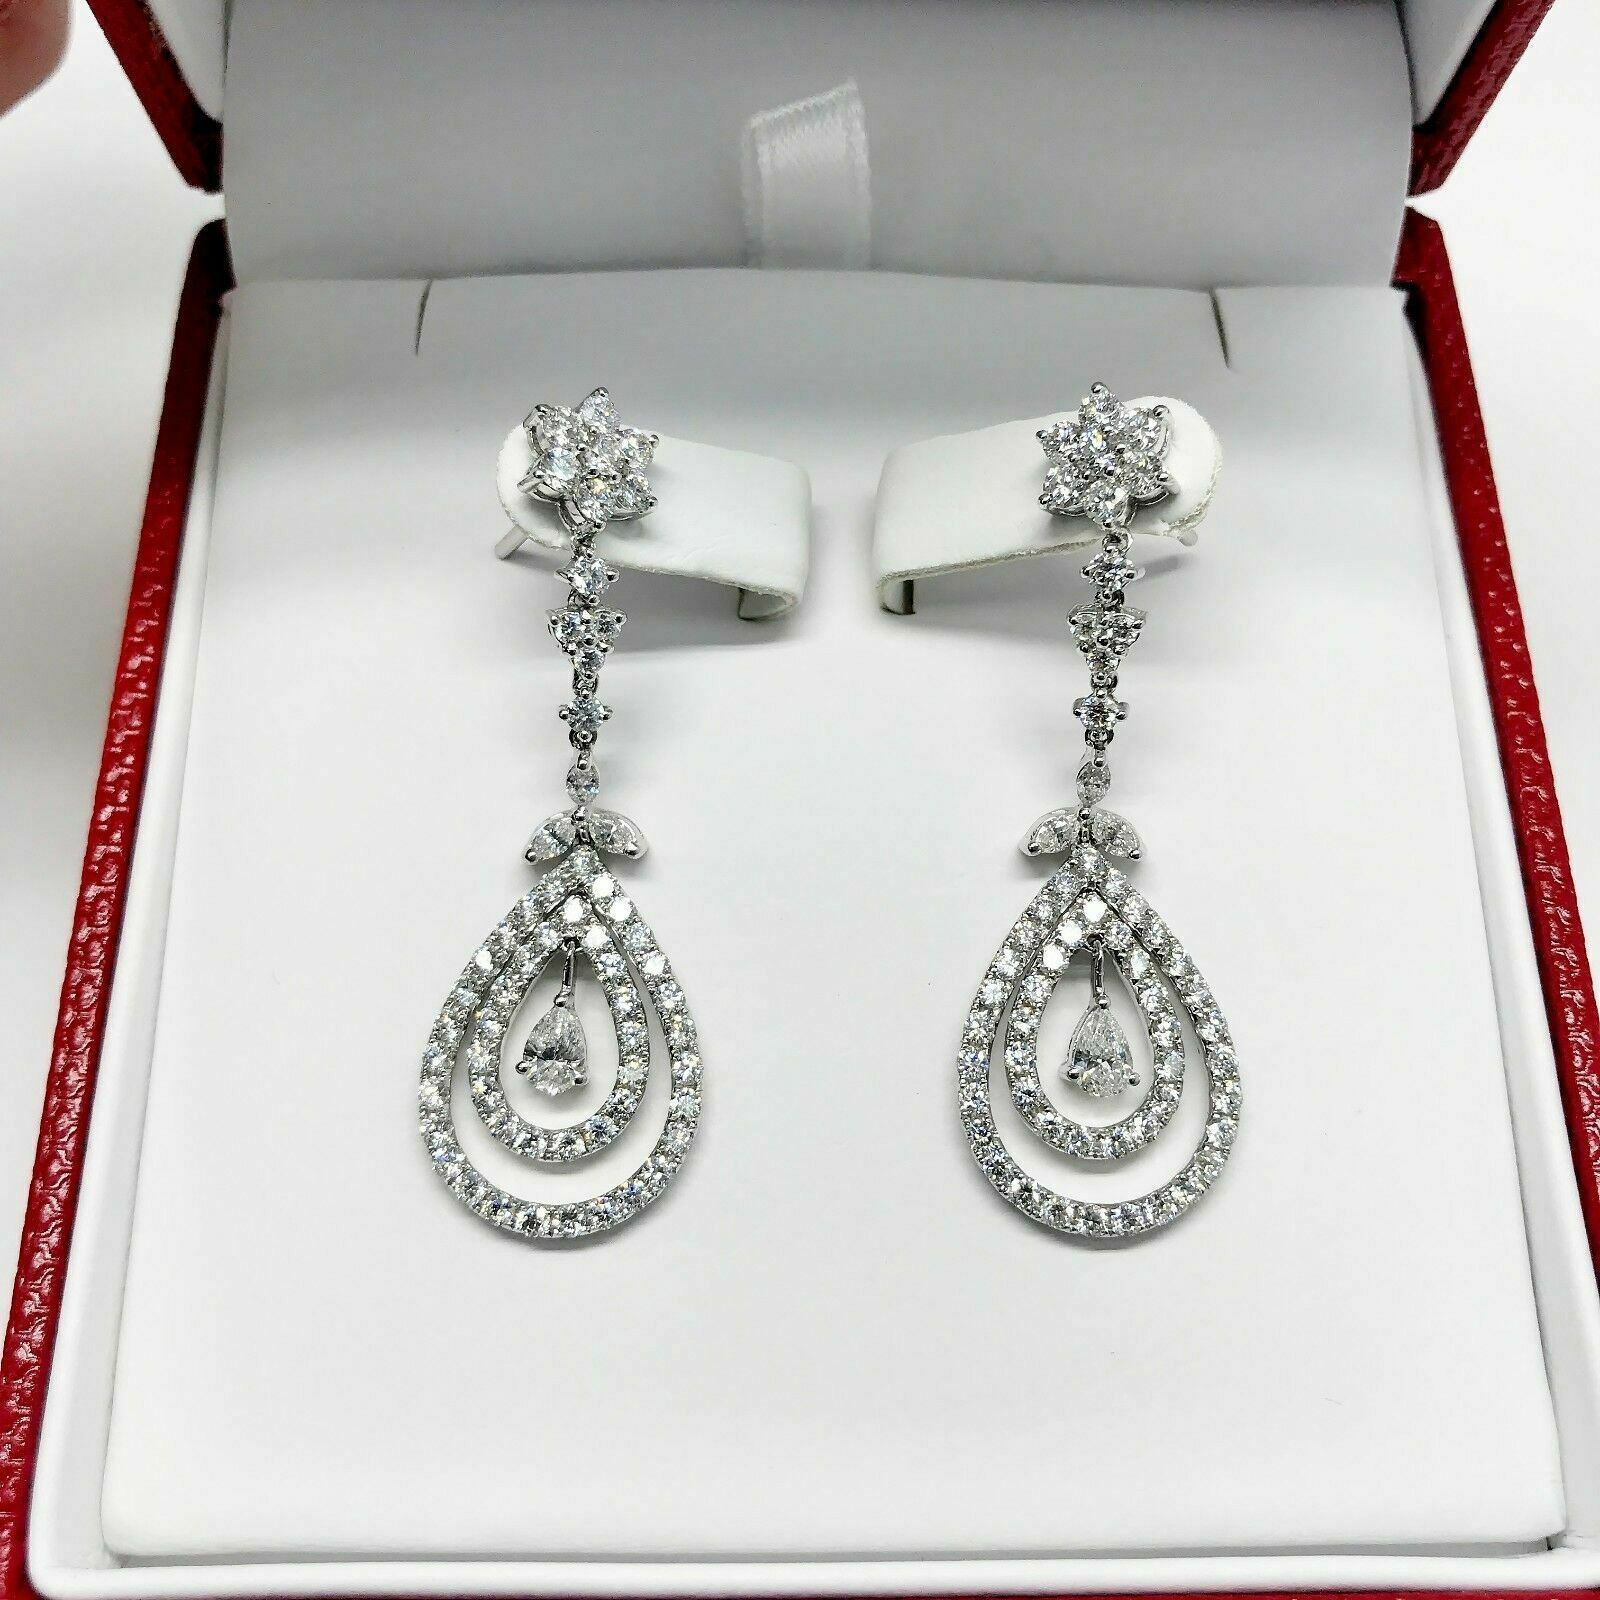 3.29 Carats t.w. Double Halo Diamond Dangle Earrings 18K Gold 1.75 Inch Drop